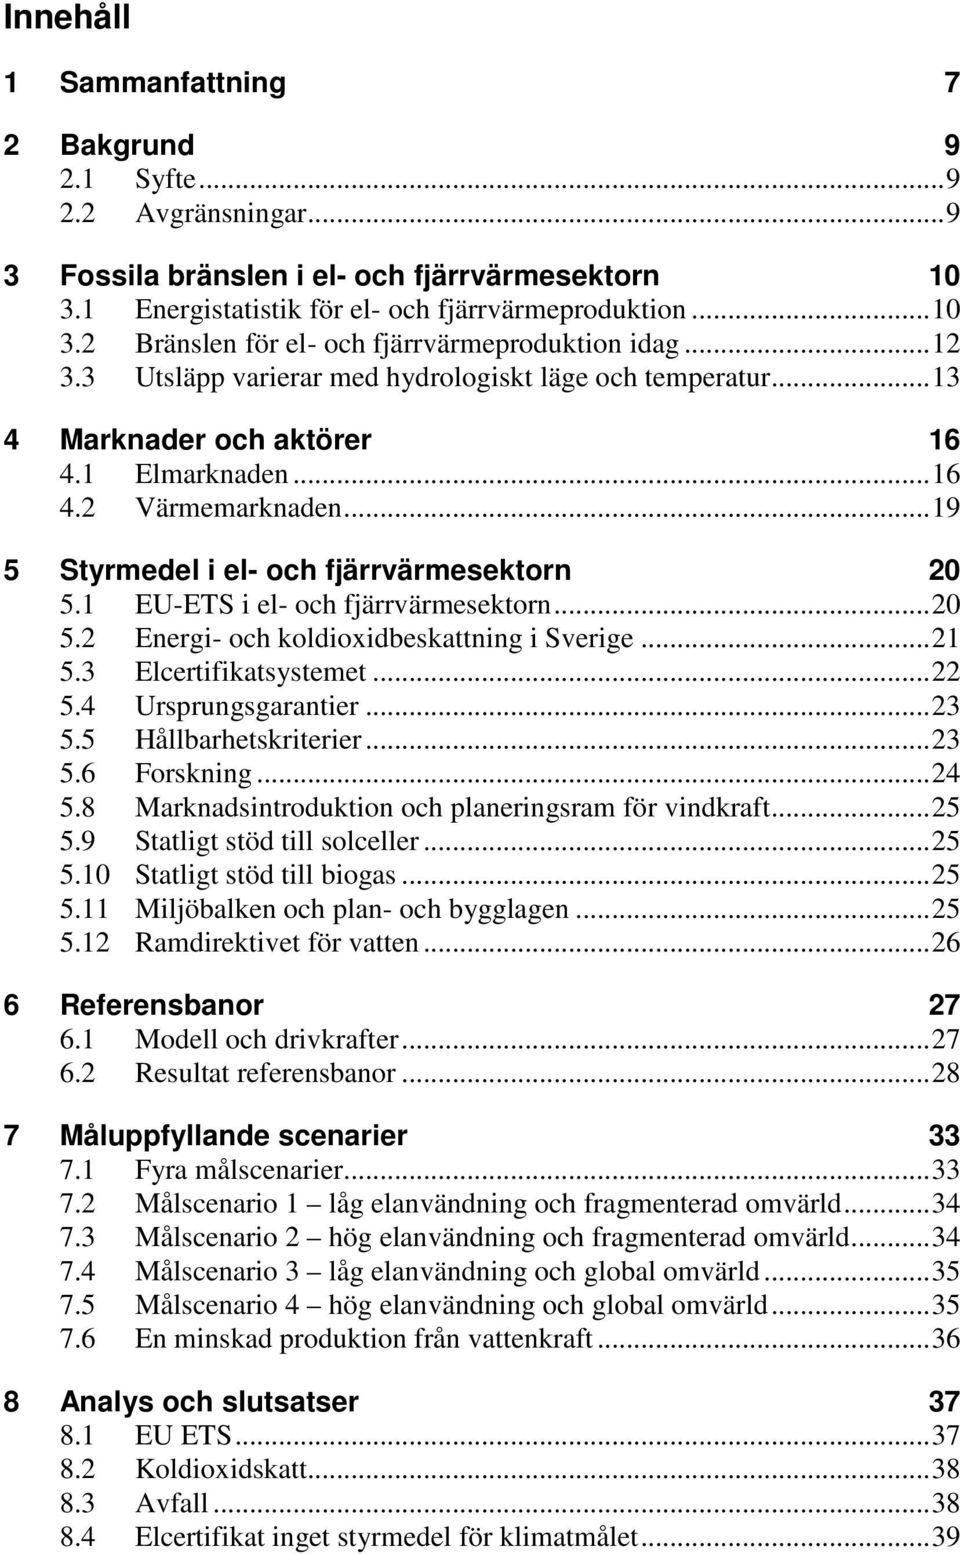 1 EU-ETS i el- och fjärrvärmesektorn... 20 5.2 Energi- och koldioxidbeskattning i Sverige... 21 5.3 Elcertifikatsystemet... 22 5.4 Ursprungsgarantier... 23 5.5 Hållbarhetskriterier... 23 5.6 Forskning.